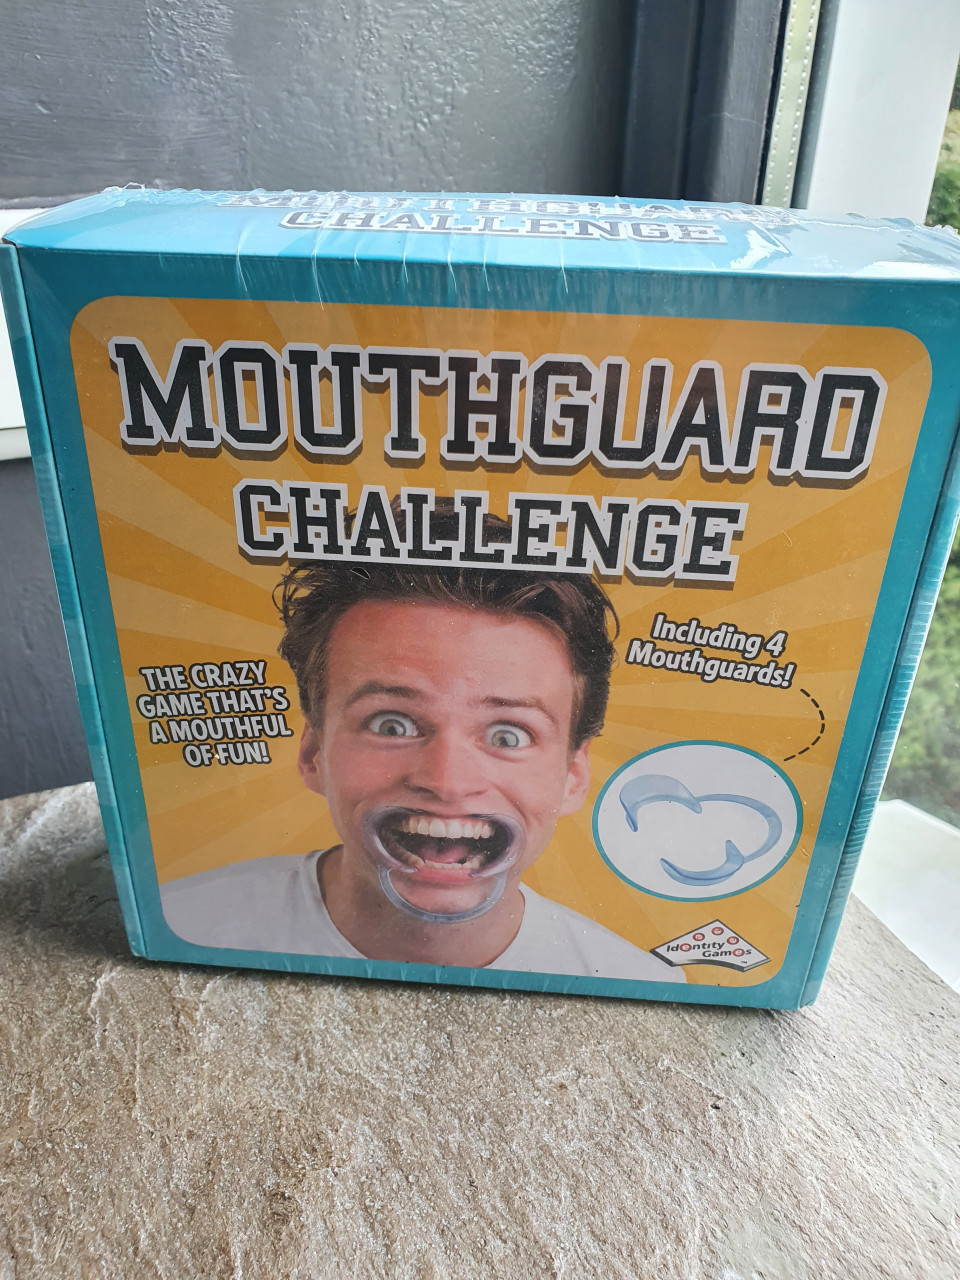 Nog nieuw leuk grappig gezelschapsspel Mouthguard Challenge aangeboden..